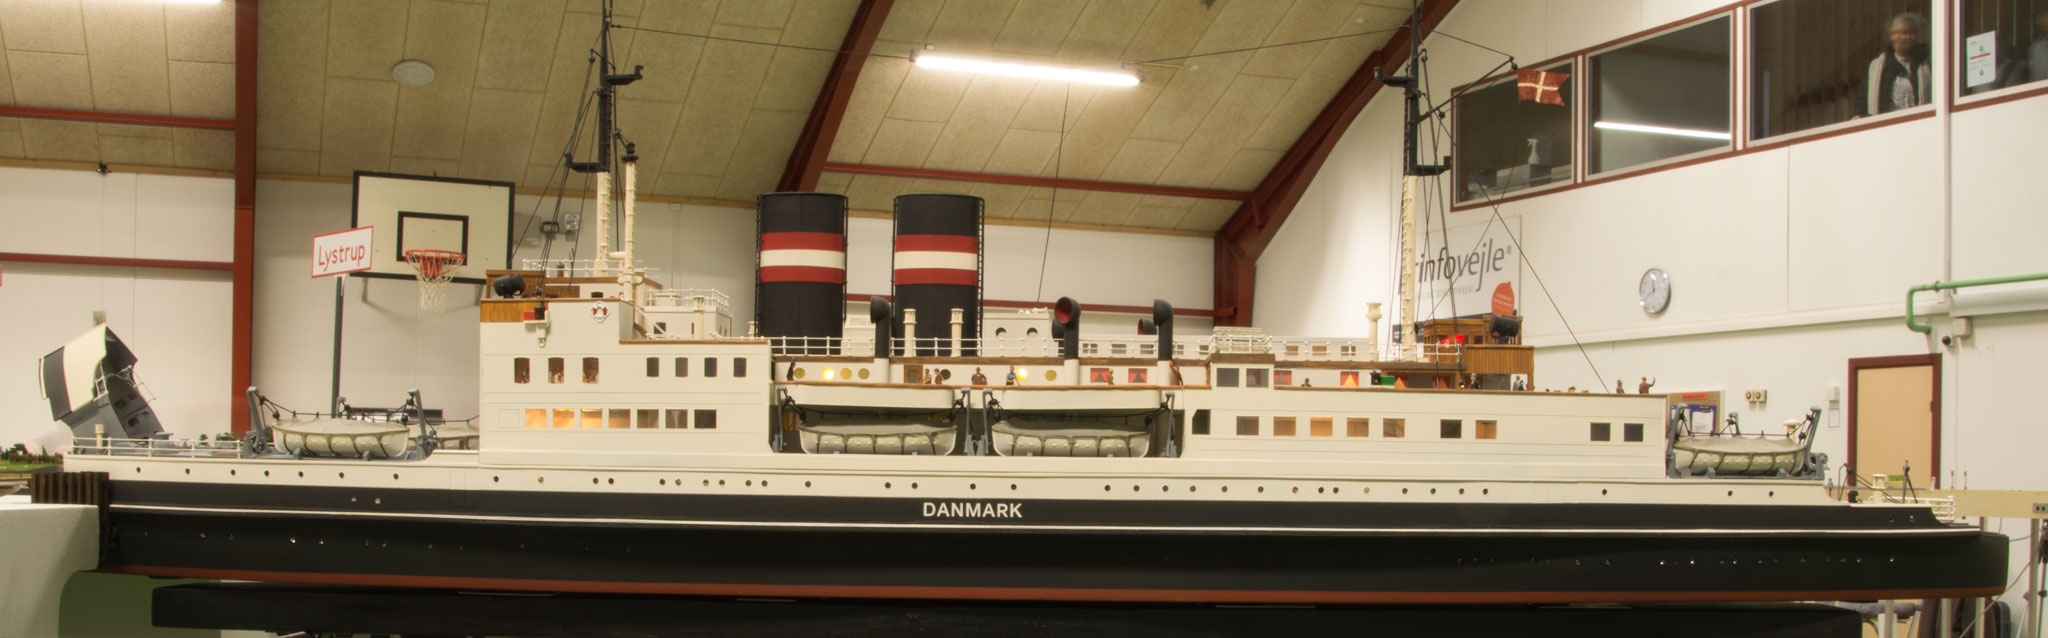 Andreas Lenz&#039; håndbyggede model af færgen S/S Danmark